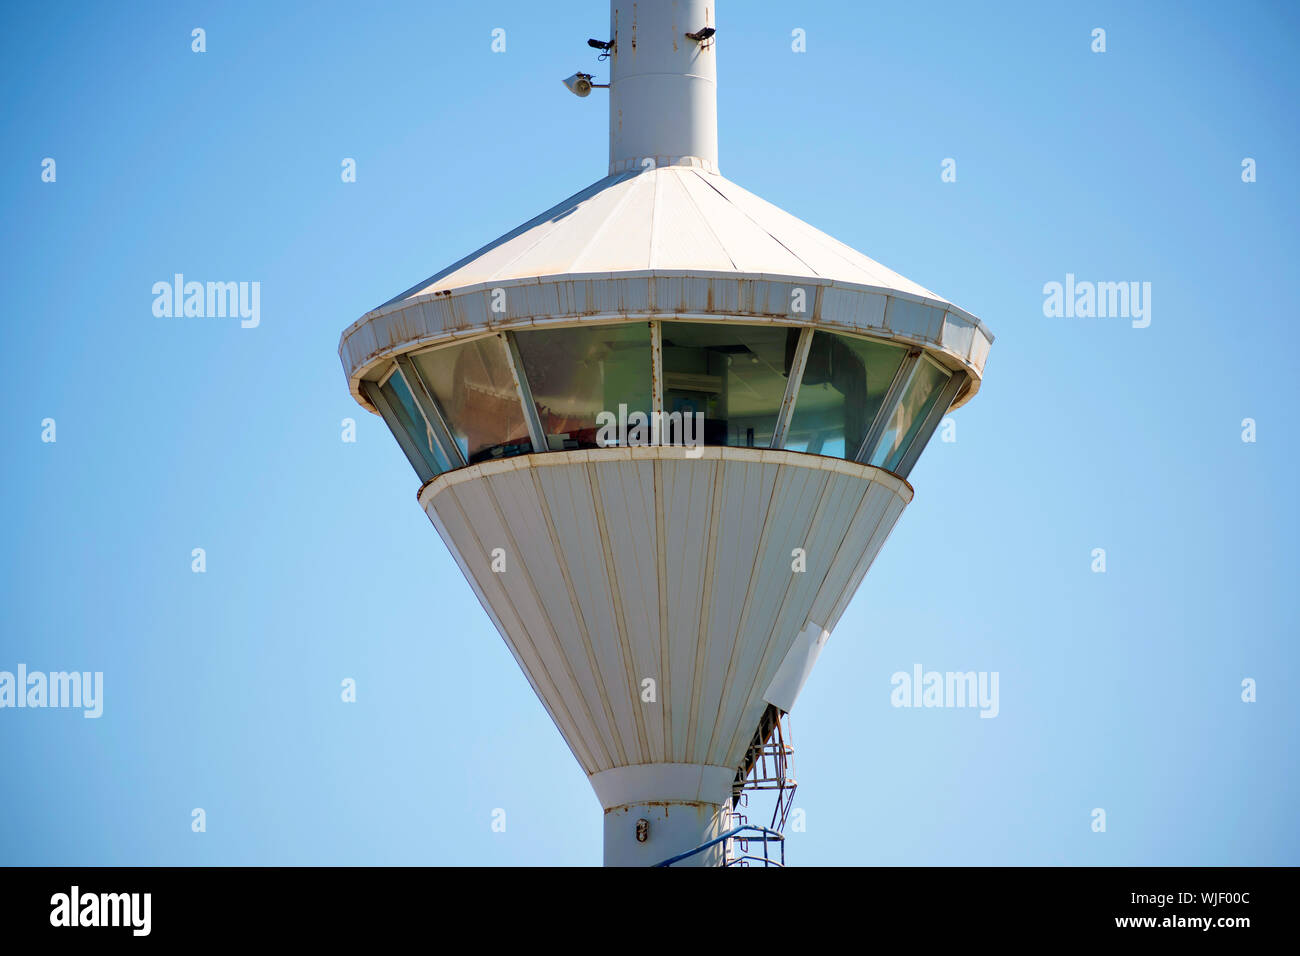 Wachsamkeit Turm Abflüge und Ankünfte am Flughafen zu kontrollieren. Port oder Harbour Tower oder Wachsamkeit gegen ein strahlend blauer Himmel in Spanien 2019. Stockfoto